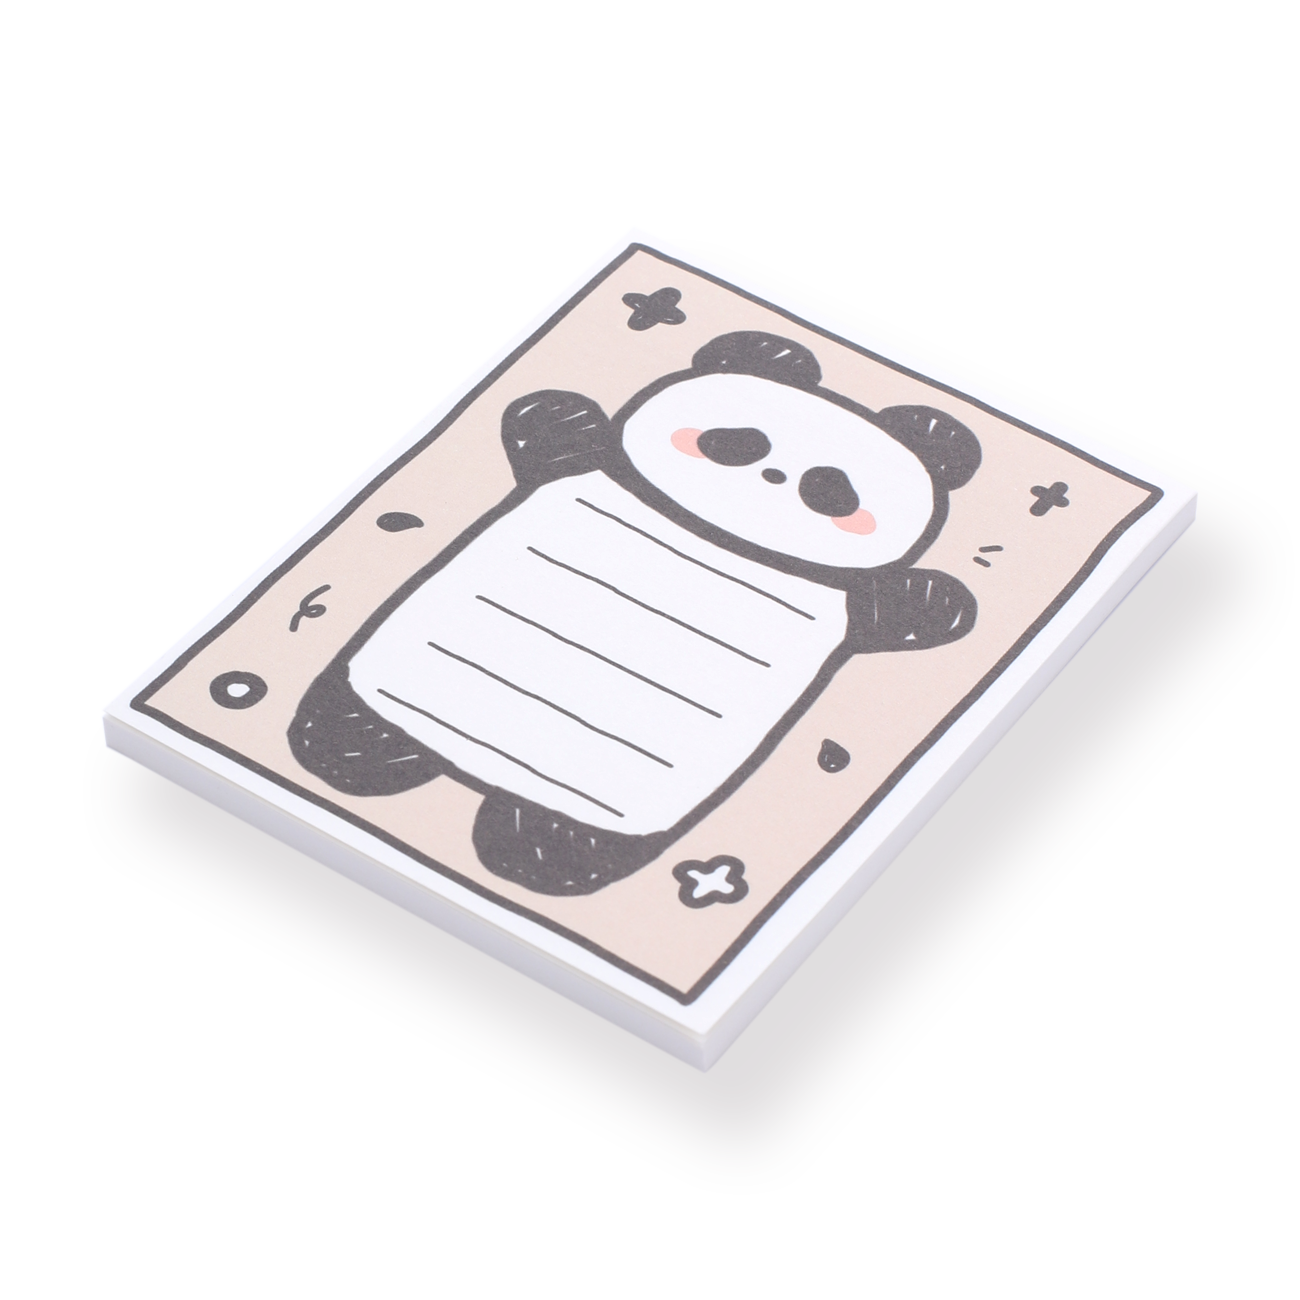 Panda Sticky Notes - Stationery Pal